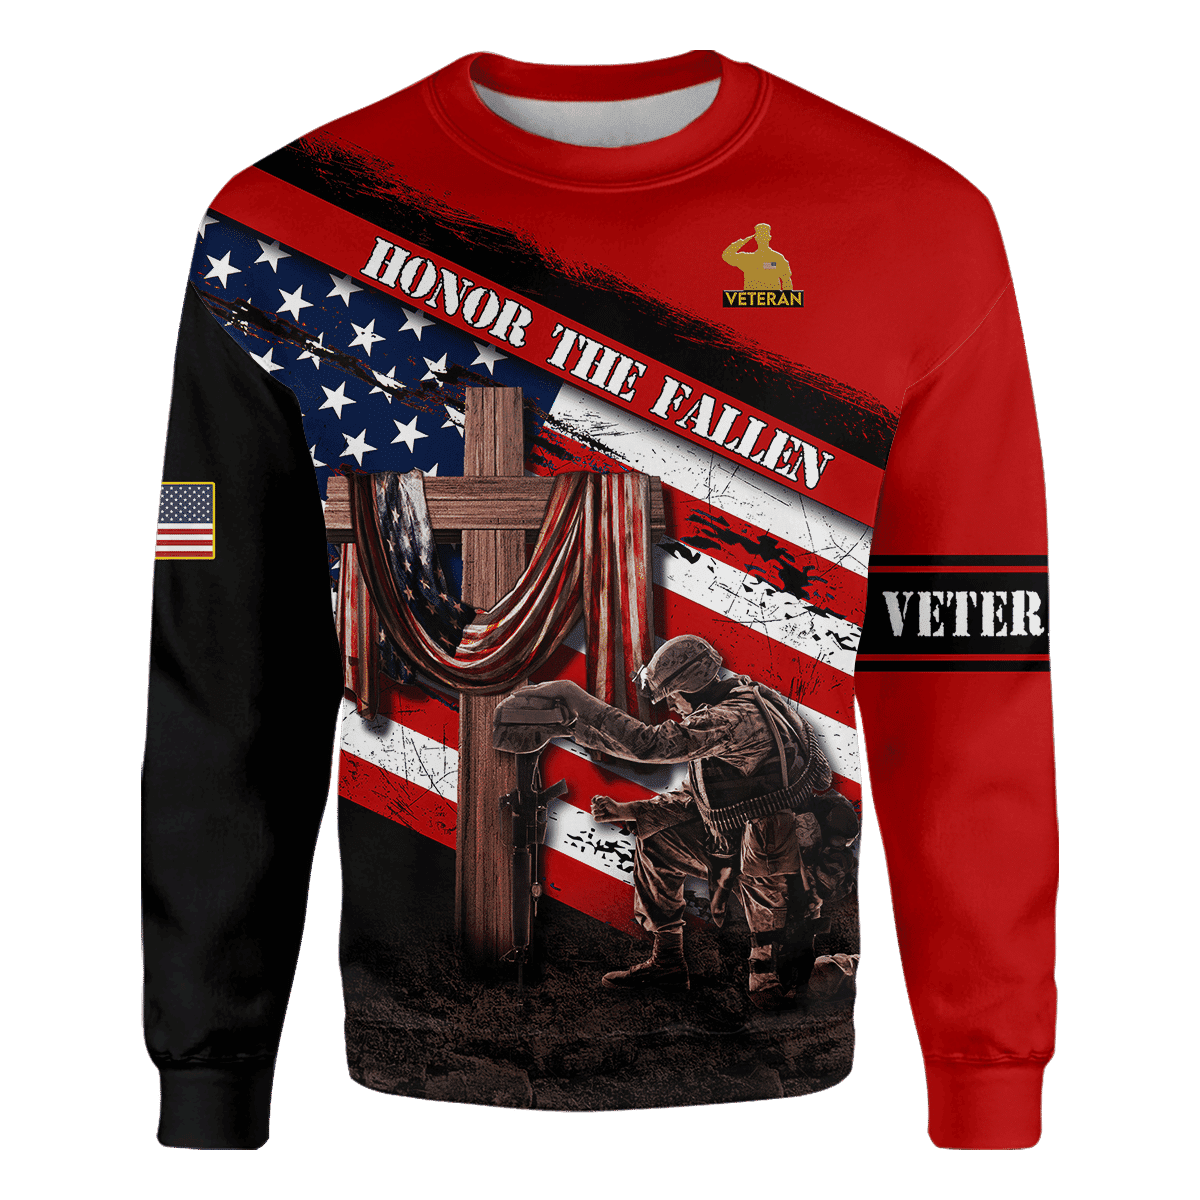 Honor The Fallen - Memorial Day - Unisex Sweatshirt With Pocket